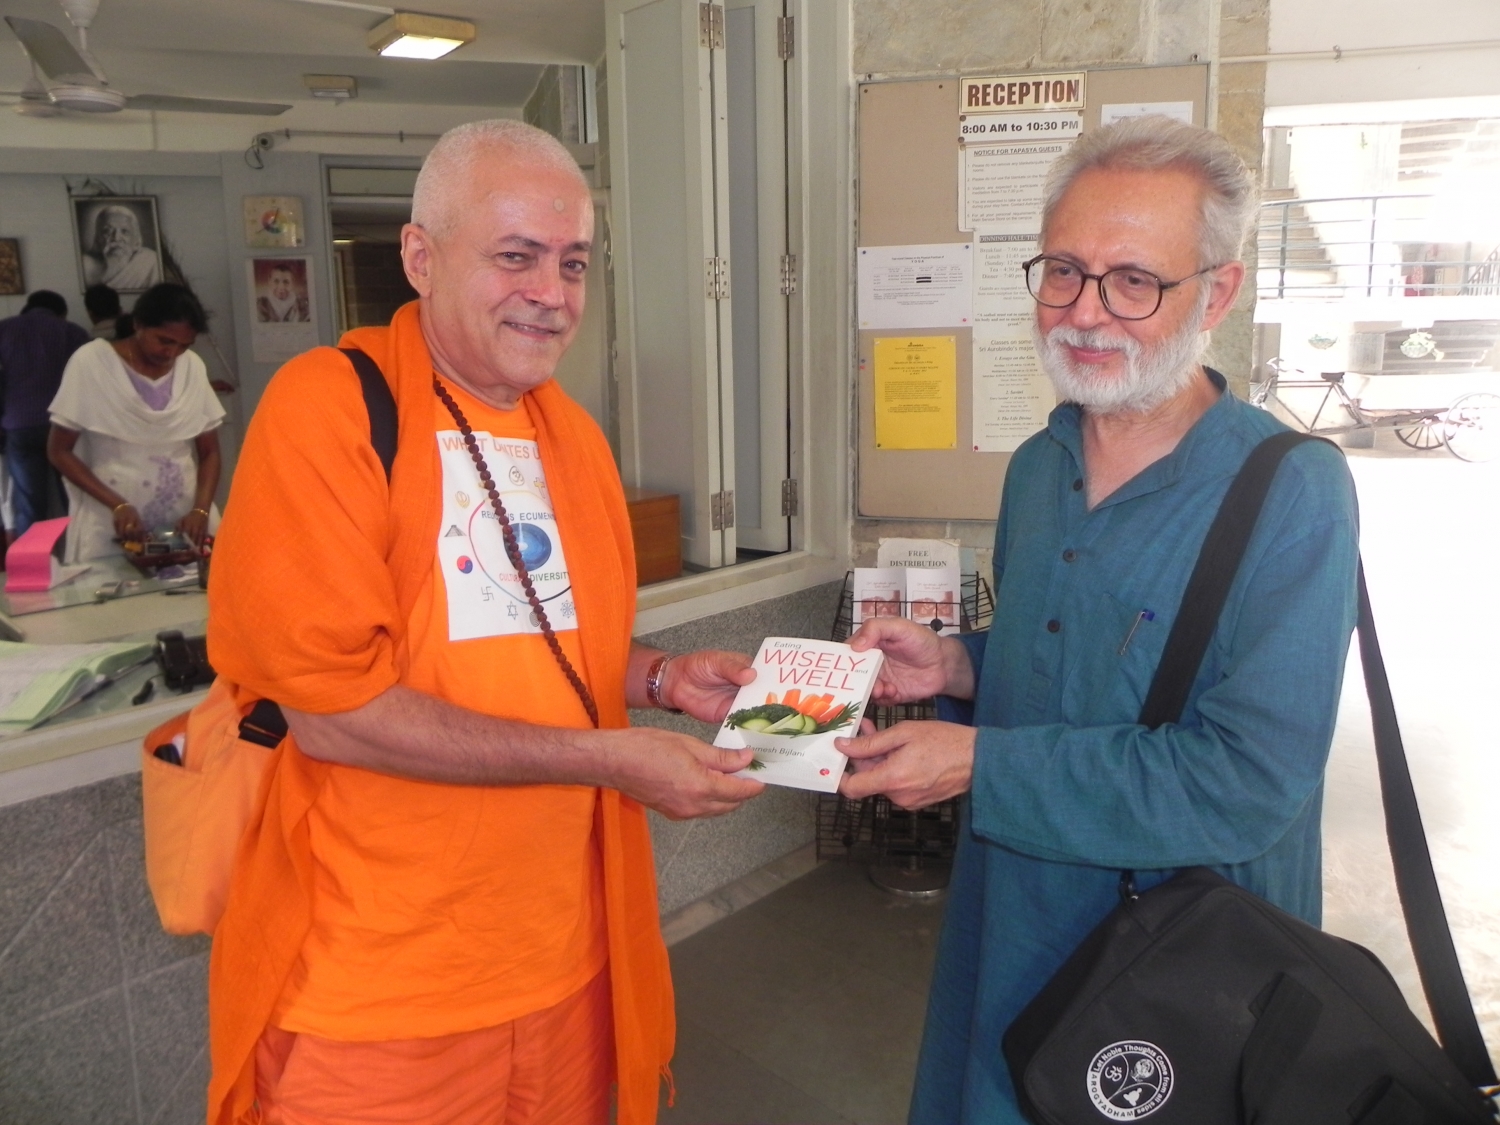 Meeting of H.H. Jagat Guru Amrta Sūryānanda Mahā Rāja with Dr. Ramesh Bijlani - Shrí Aurobindo Áshrama, New Dillí, IÍndia - 2012, October